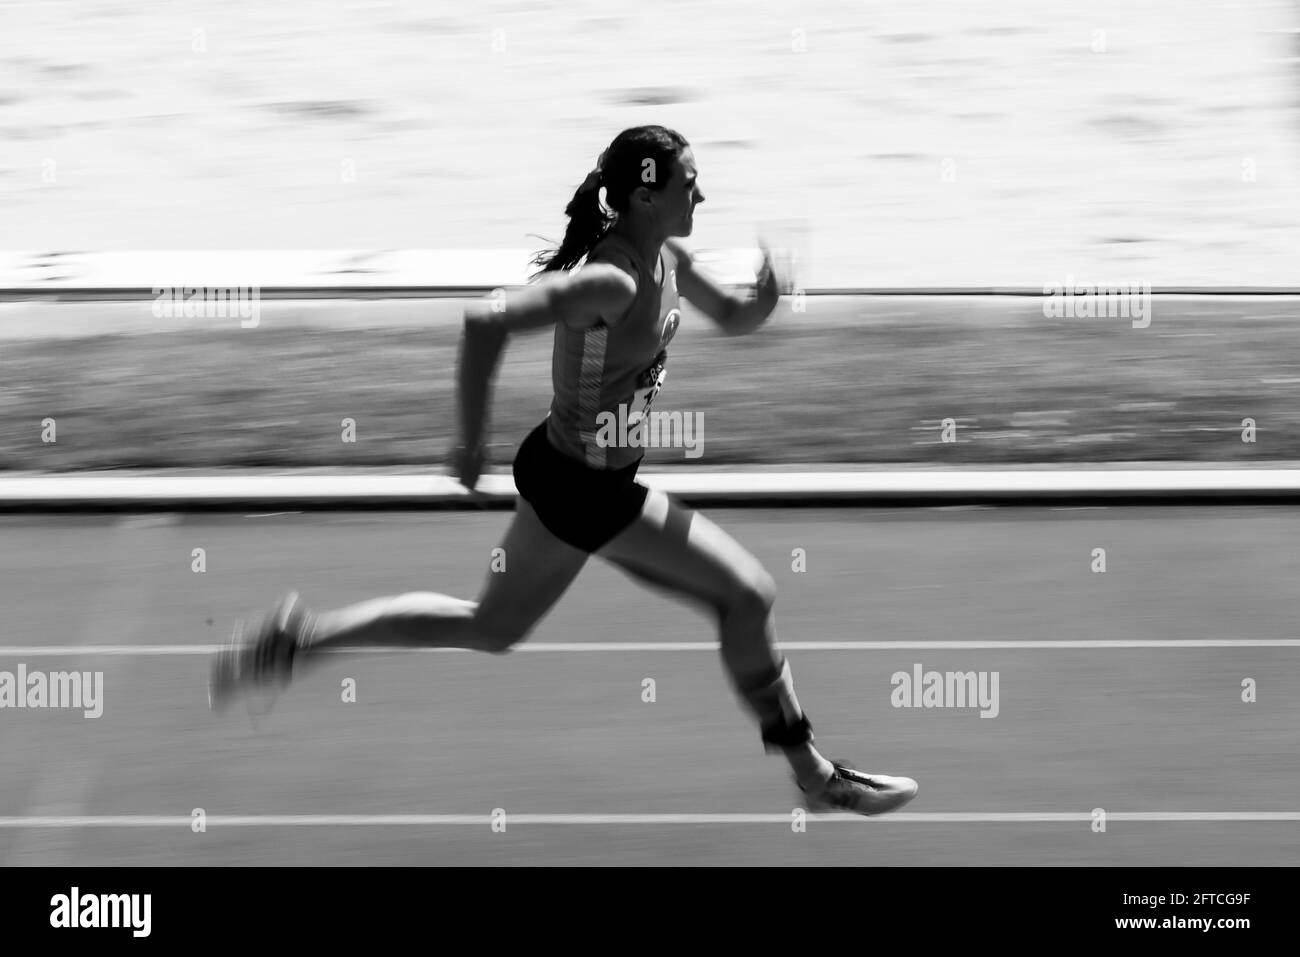 Leverkusen, Manforter Stadion 13.05.21: Irmgard Bensusan (Leverkusen) Ÿber 400m Lauf bei einer Leichtathletik Veranstaltung fŸr Behinderte und Athlete Stock Photo